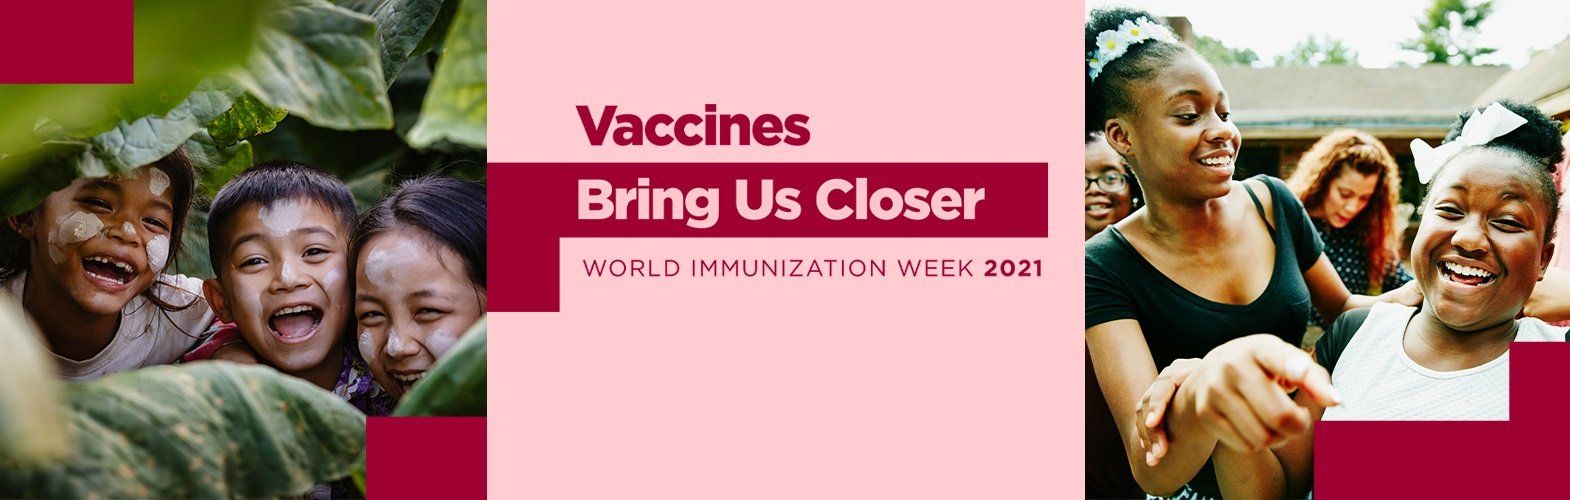 Mesajul transmis de ARPIM în Săptămâna Mondială a Imunizării